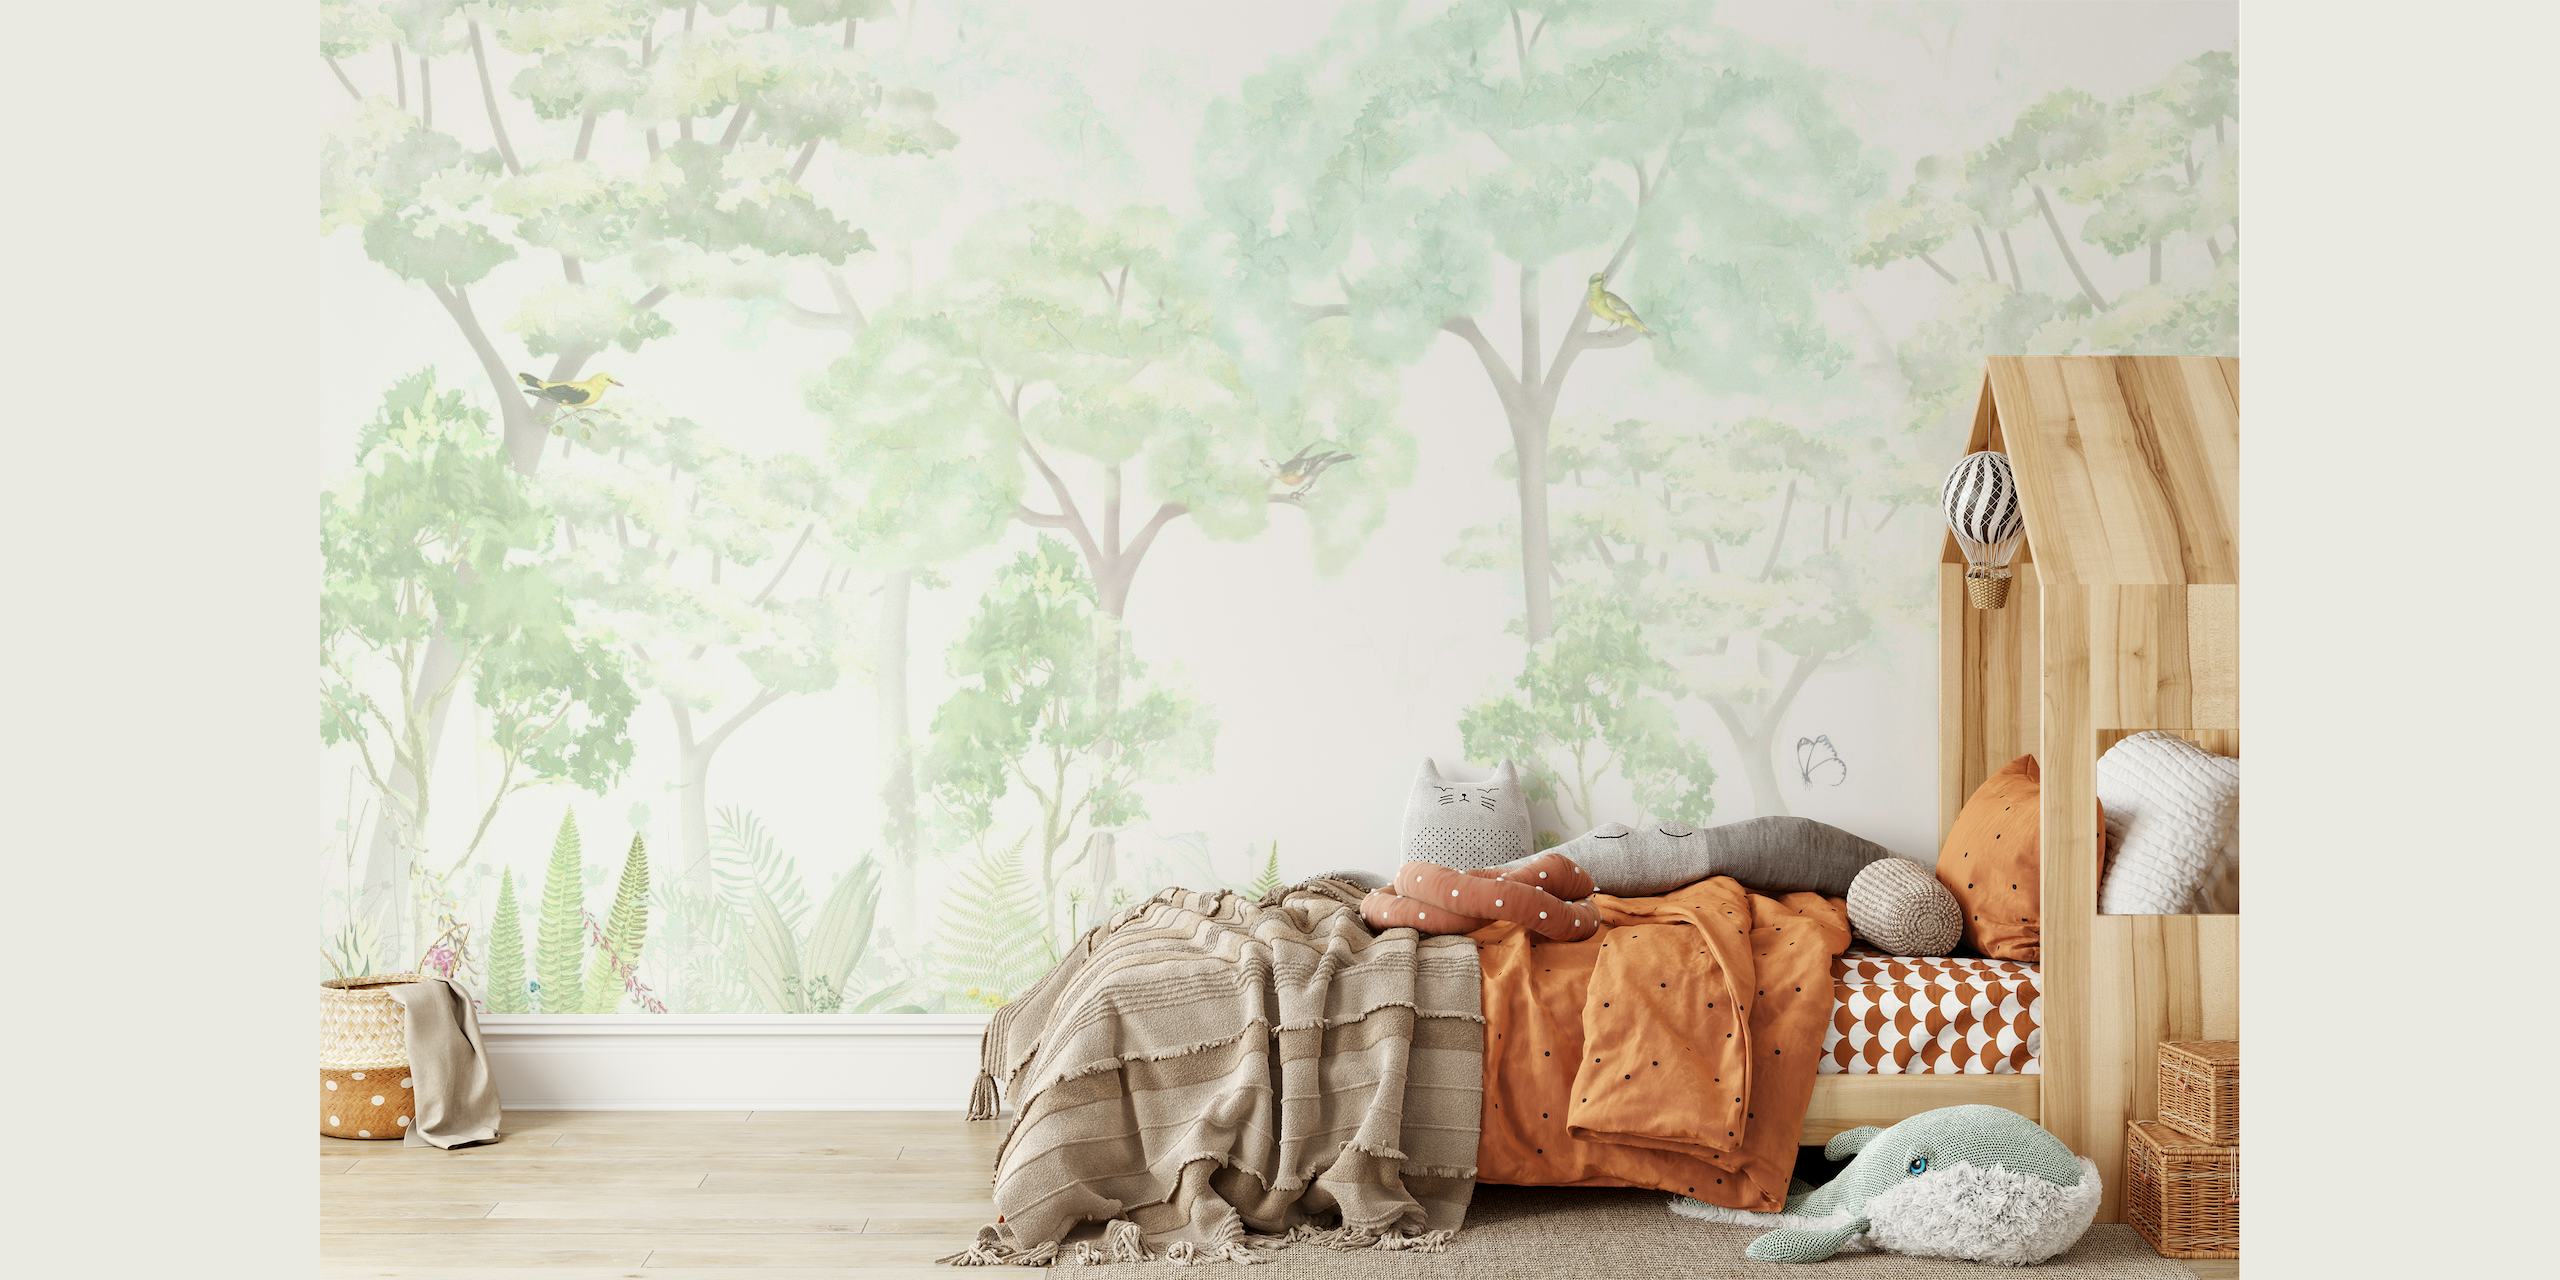 Čudovita zidna zidna slika u obliku šume s nježnim zelenim tonovima i eteričnim drvećem